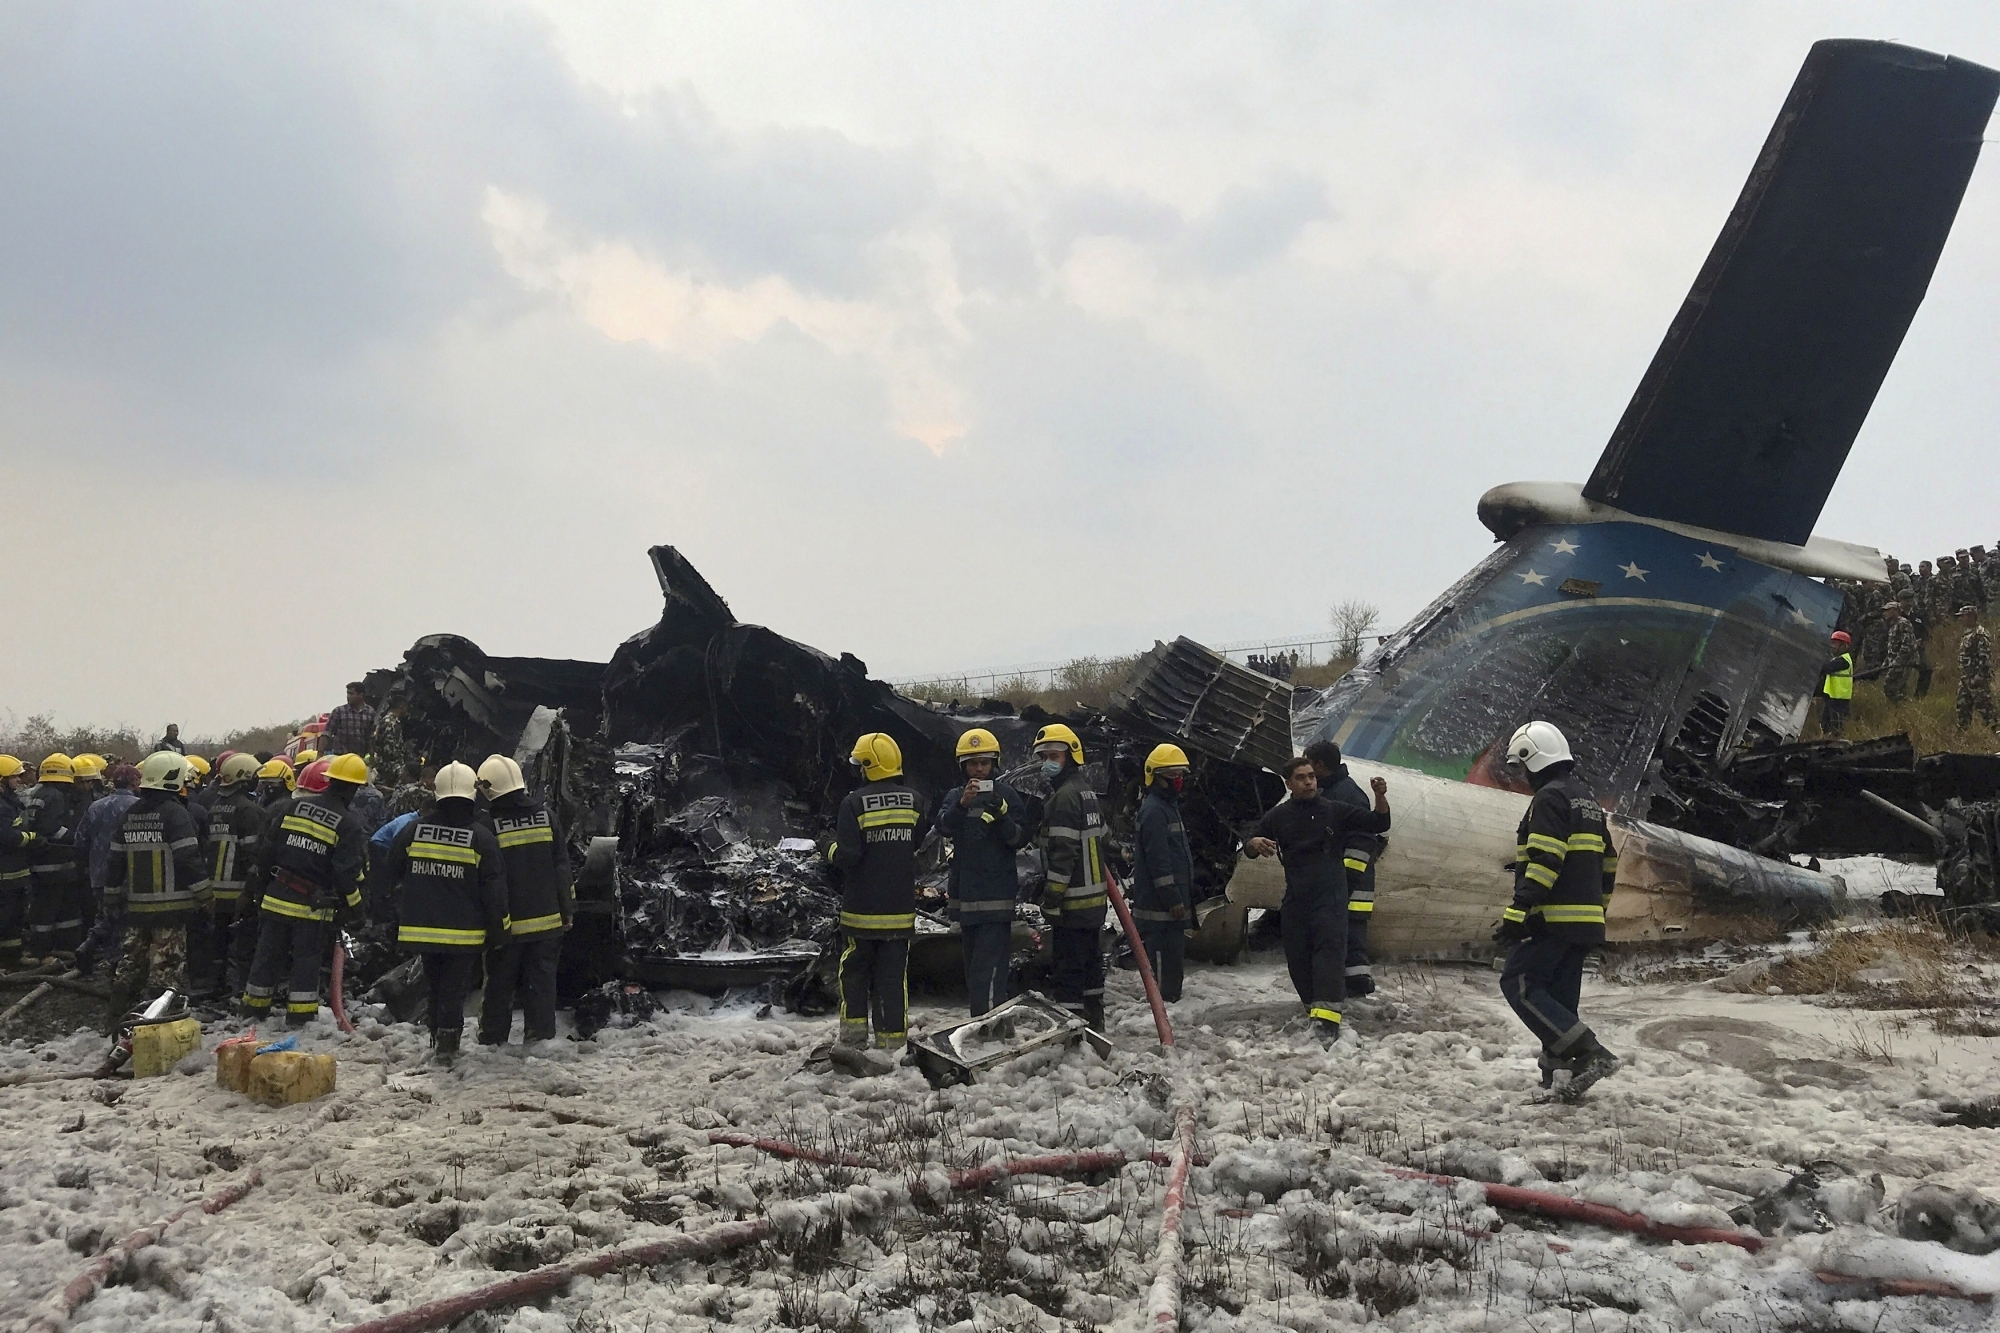 श्रीविजया एयर, इंडोनेशिया हवाई दुर्घटना, इंडोनेशिया, sriwijaya air plane loses contact, sriwijaya air plane crash, Sriwijaya Air, sj182, Indonesia, air accident 2021,